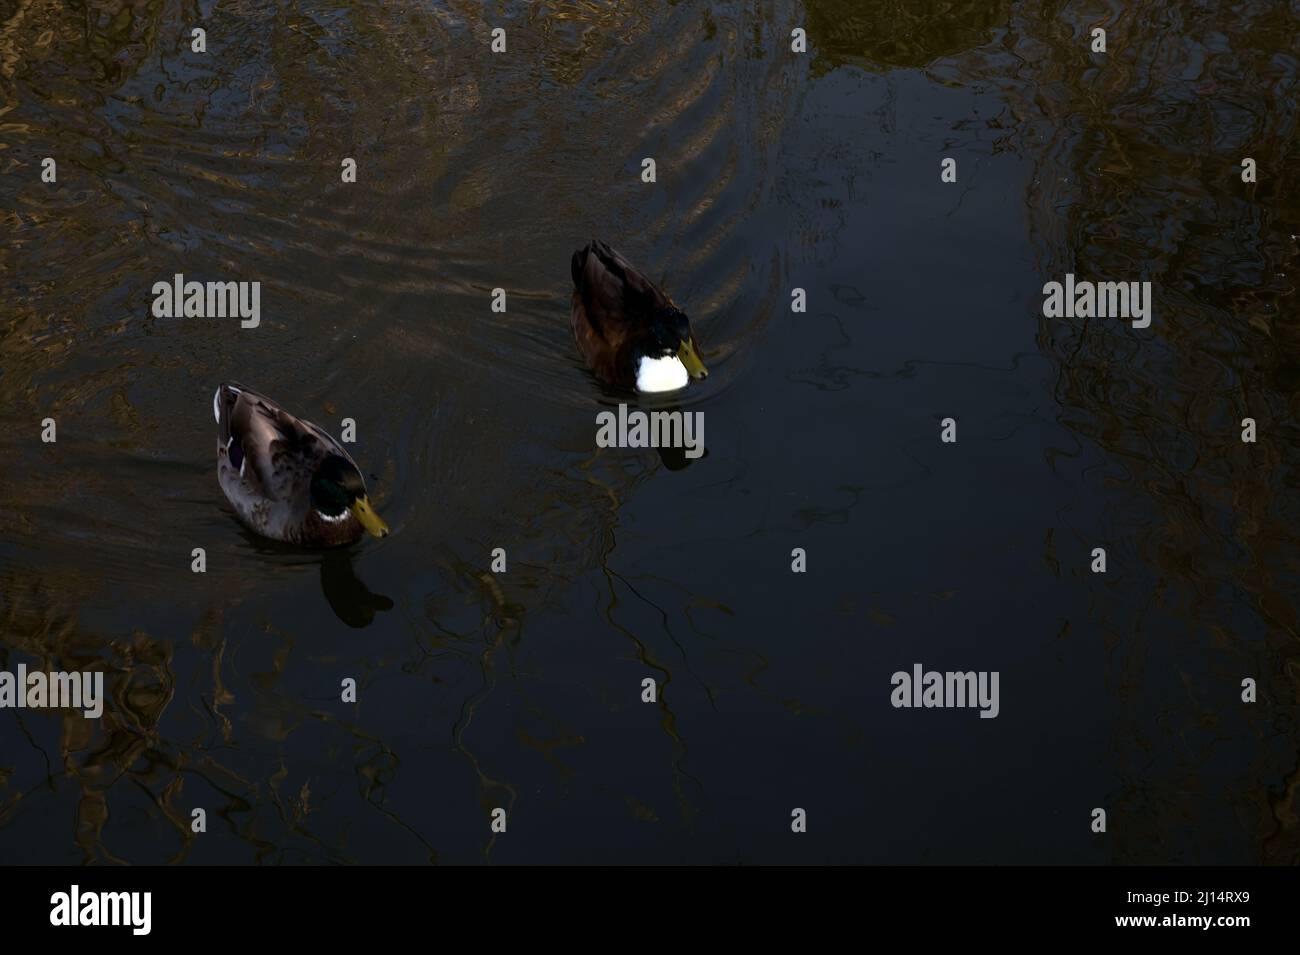 Mallards floating on a lake Stock Photo